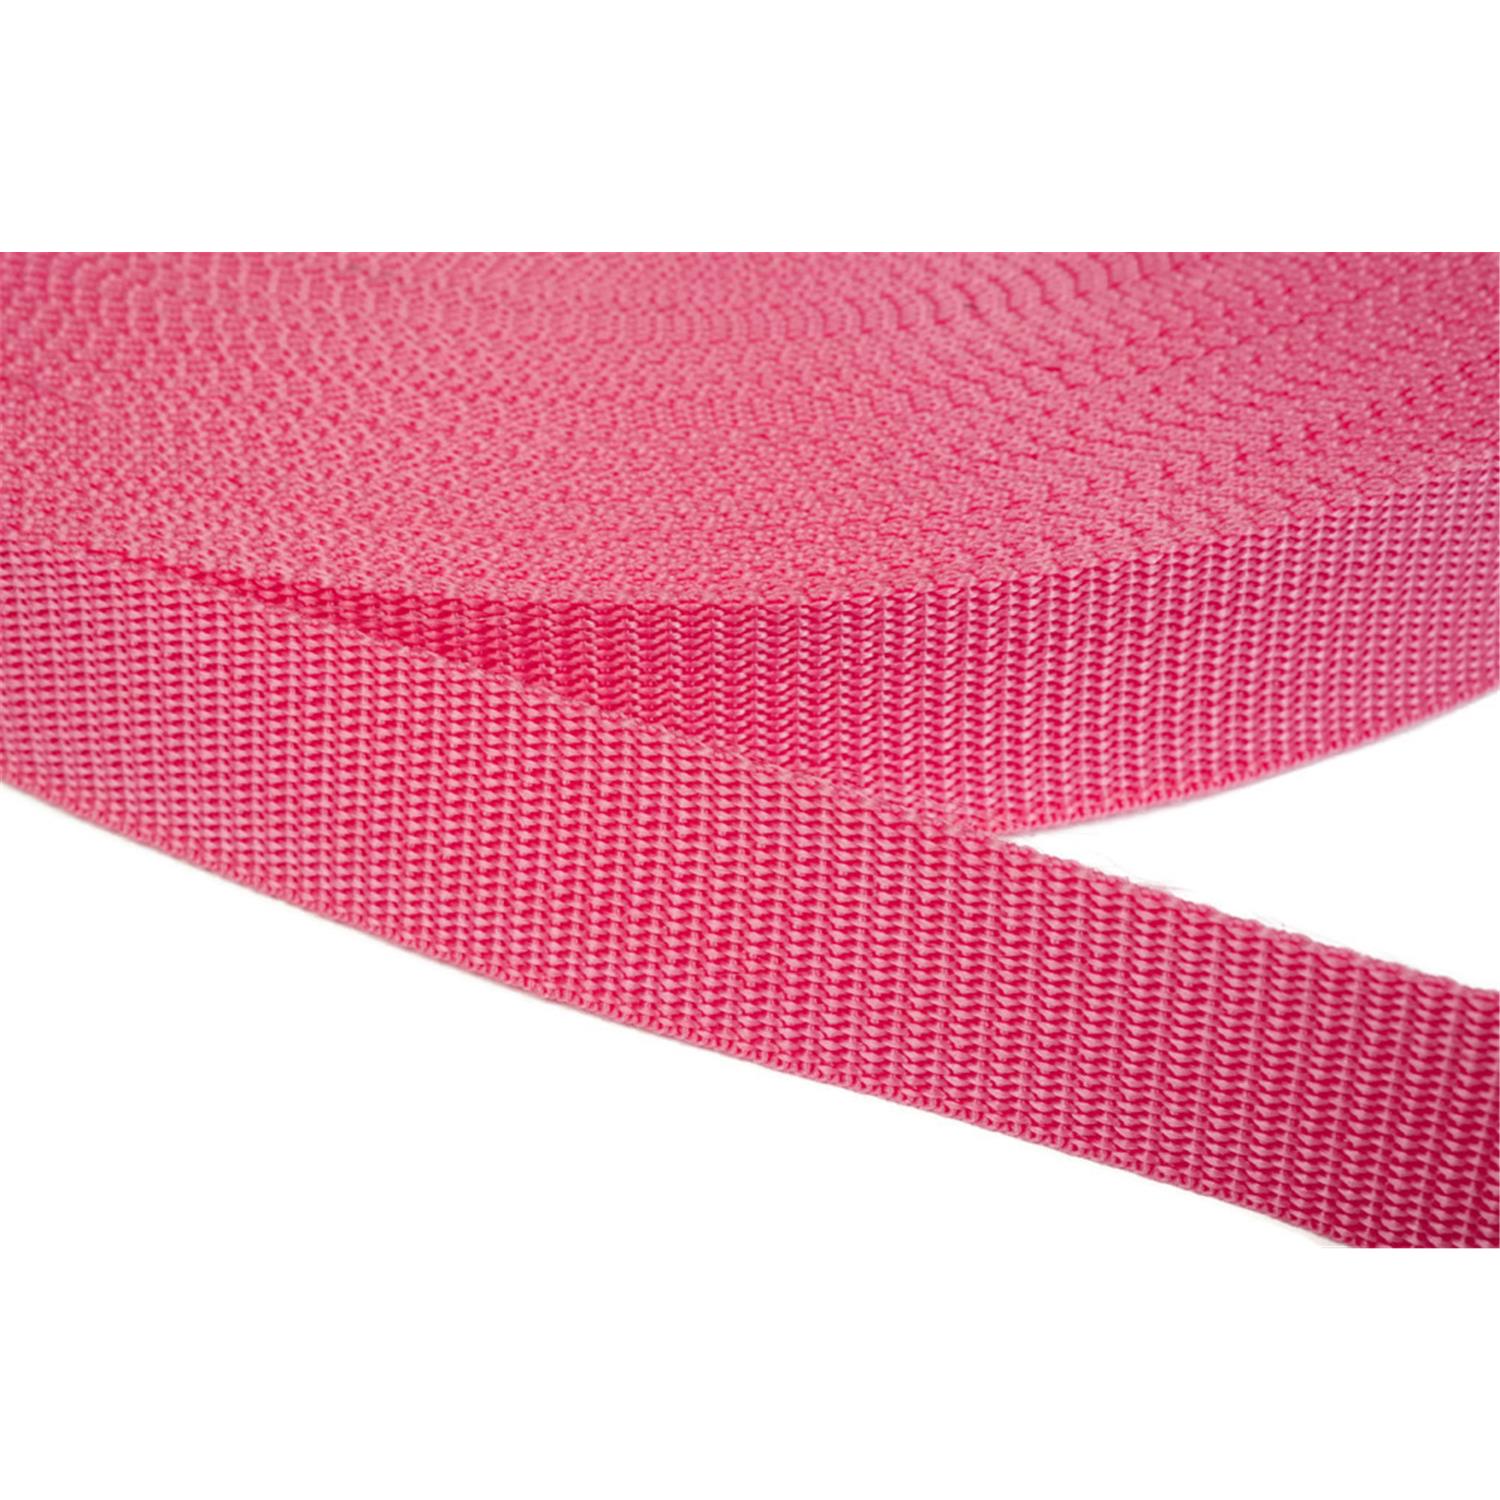 Gurtband 20mm breit aus Polypropylen in 41 Farben 13 - pink 12 Meter